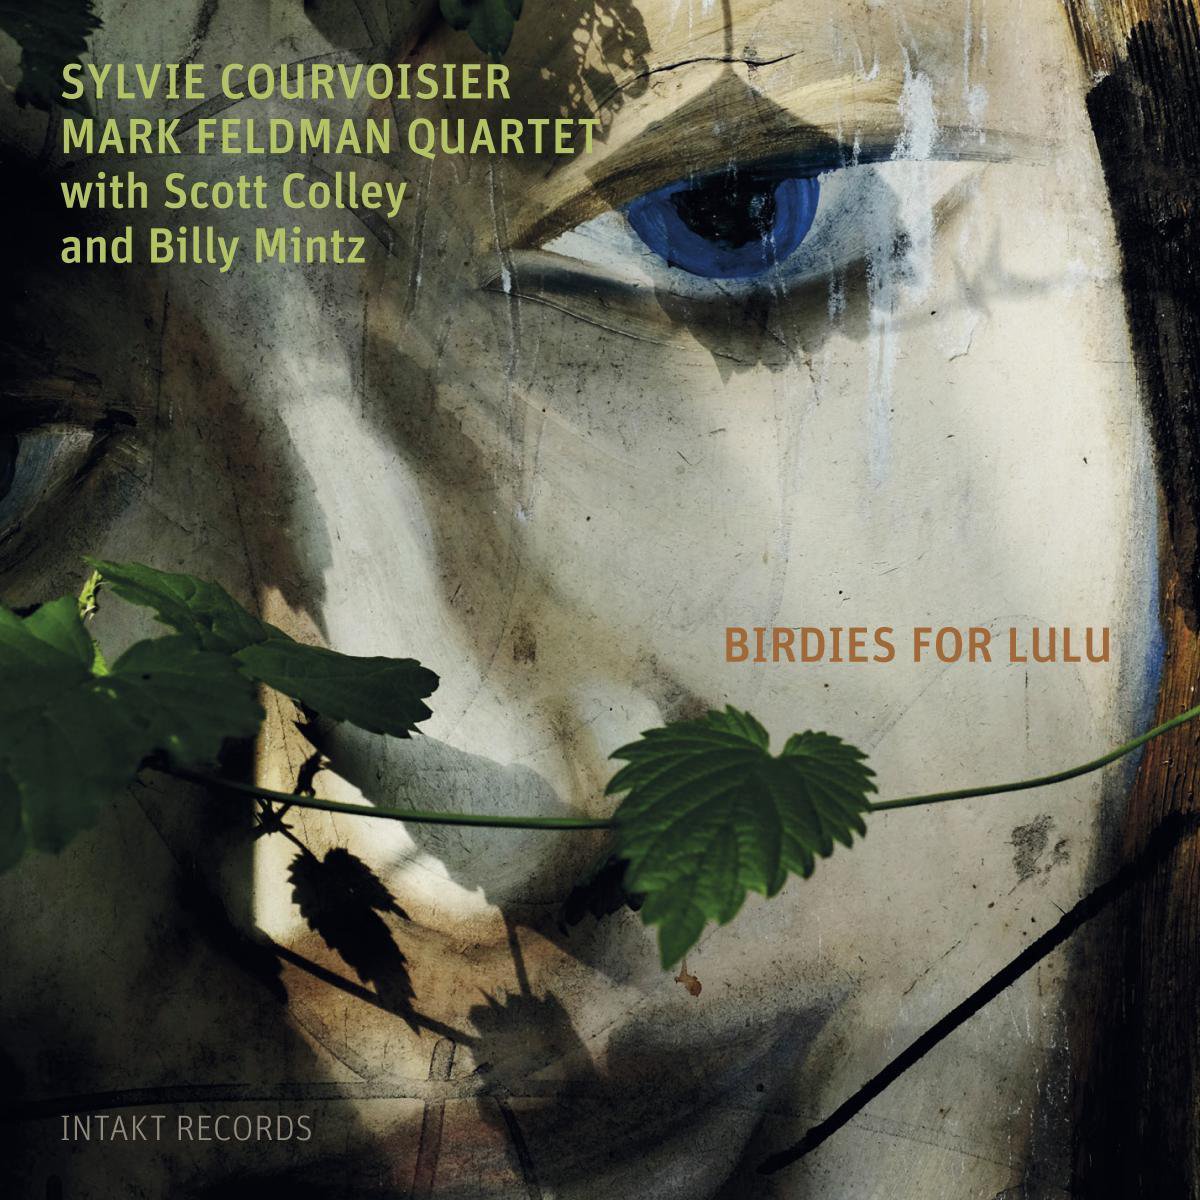 Courvoisier/Feldman Quartett: Birdies for Lulu